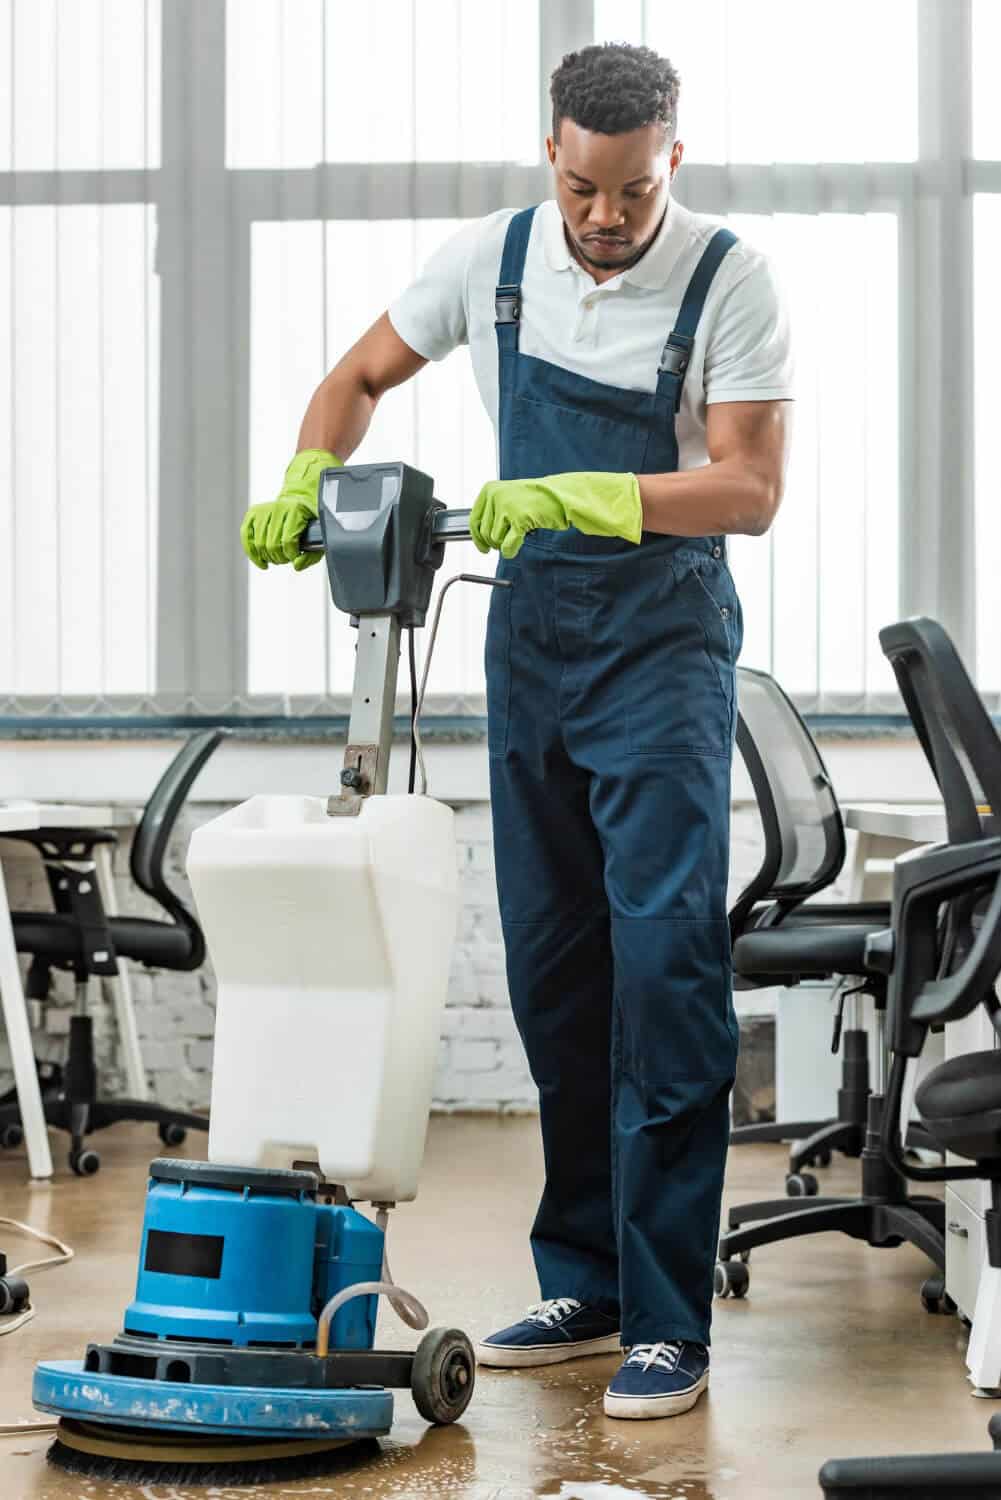 Entreprise de nettoyage - Homme qui nettoie le sol avec une machine